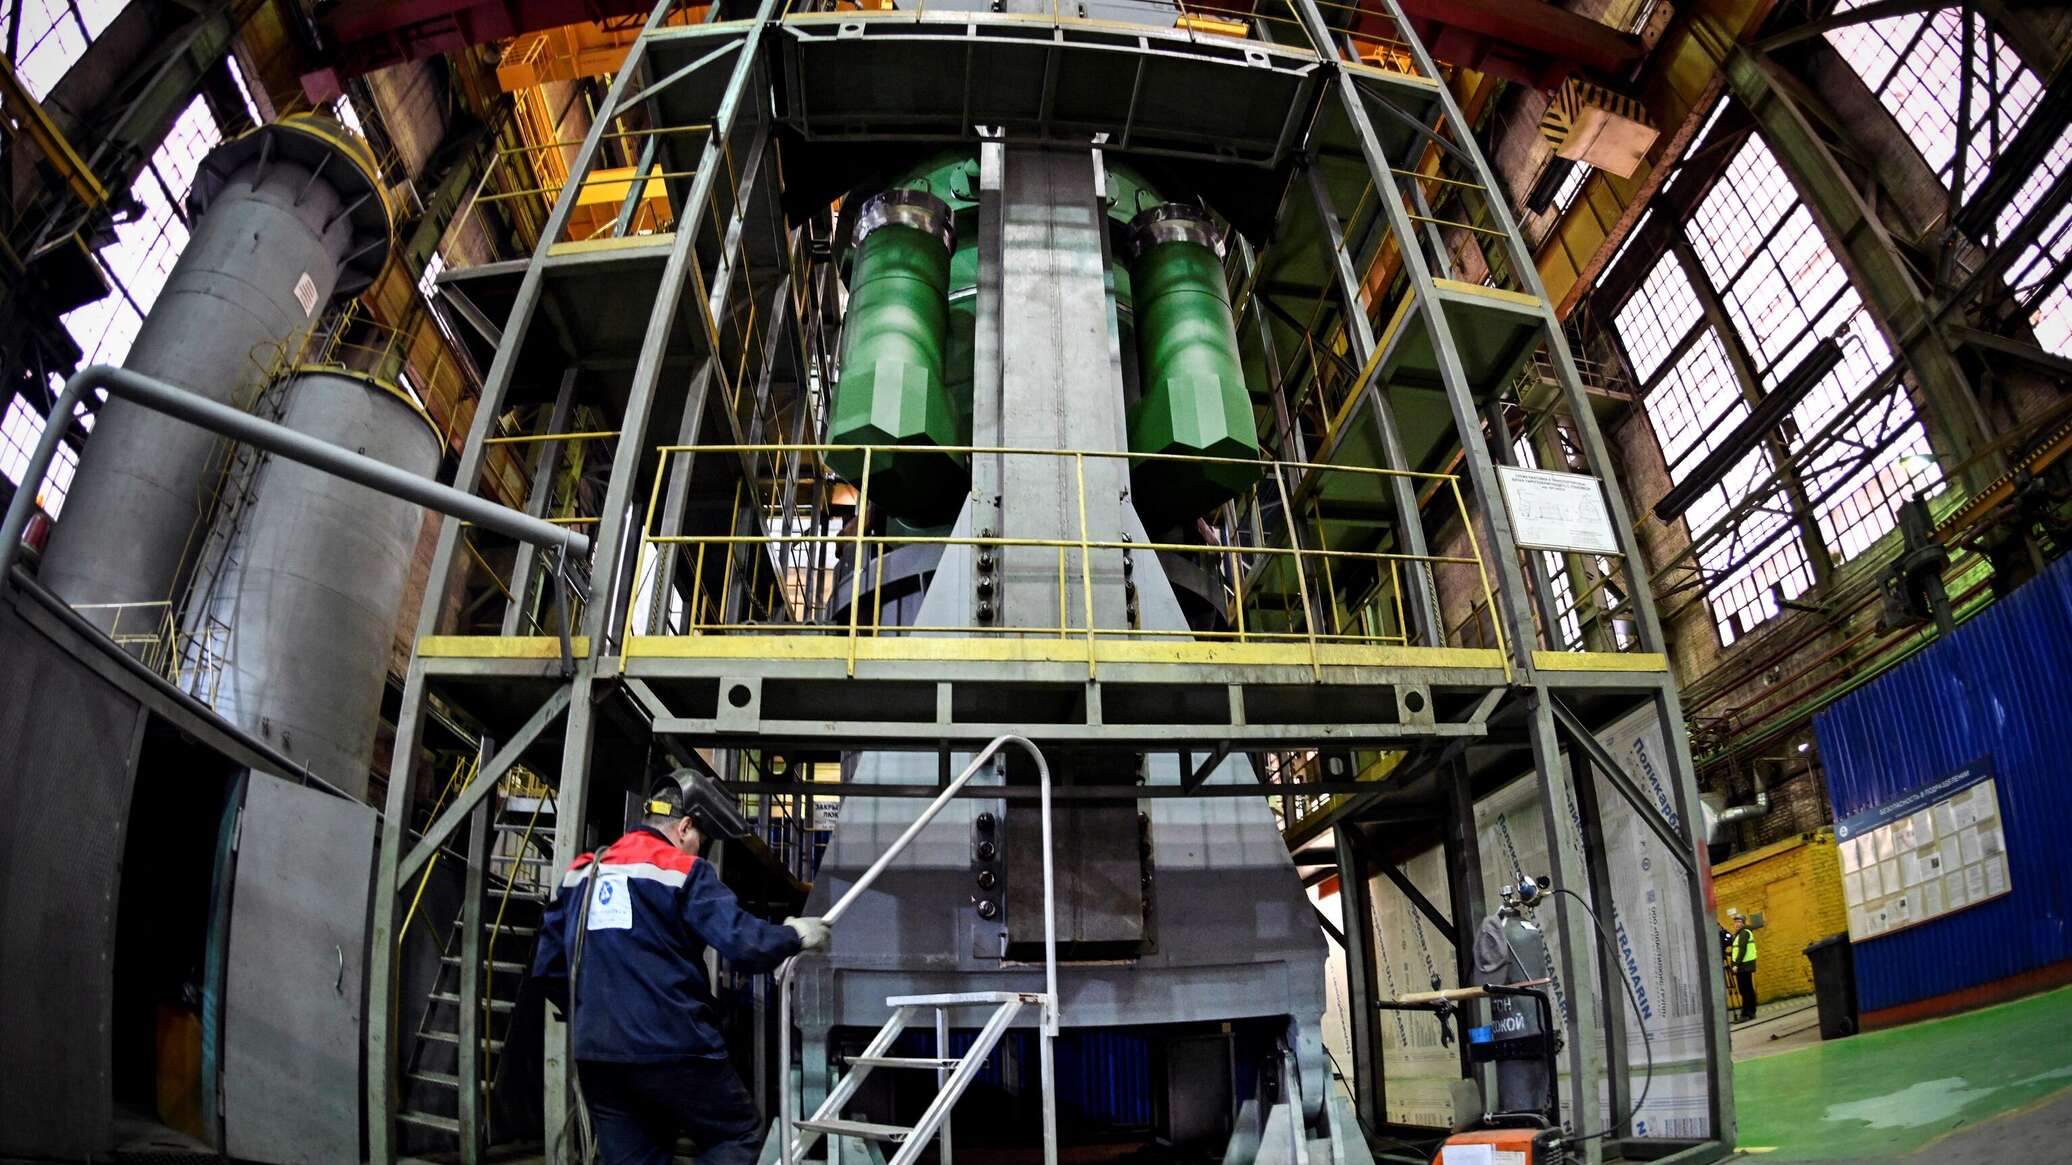 الجزائر تعتمد التكنولوجيا الروسية في برنامجها النووي.. ما التفاصيل والأسباب؟